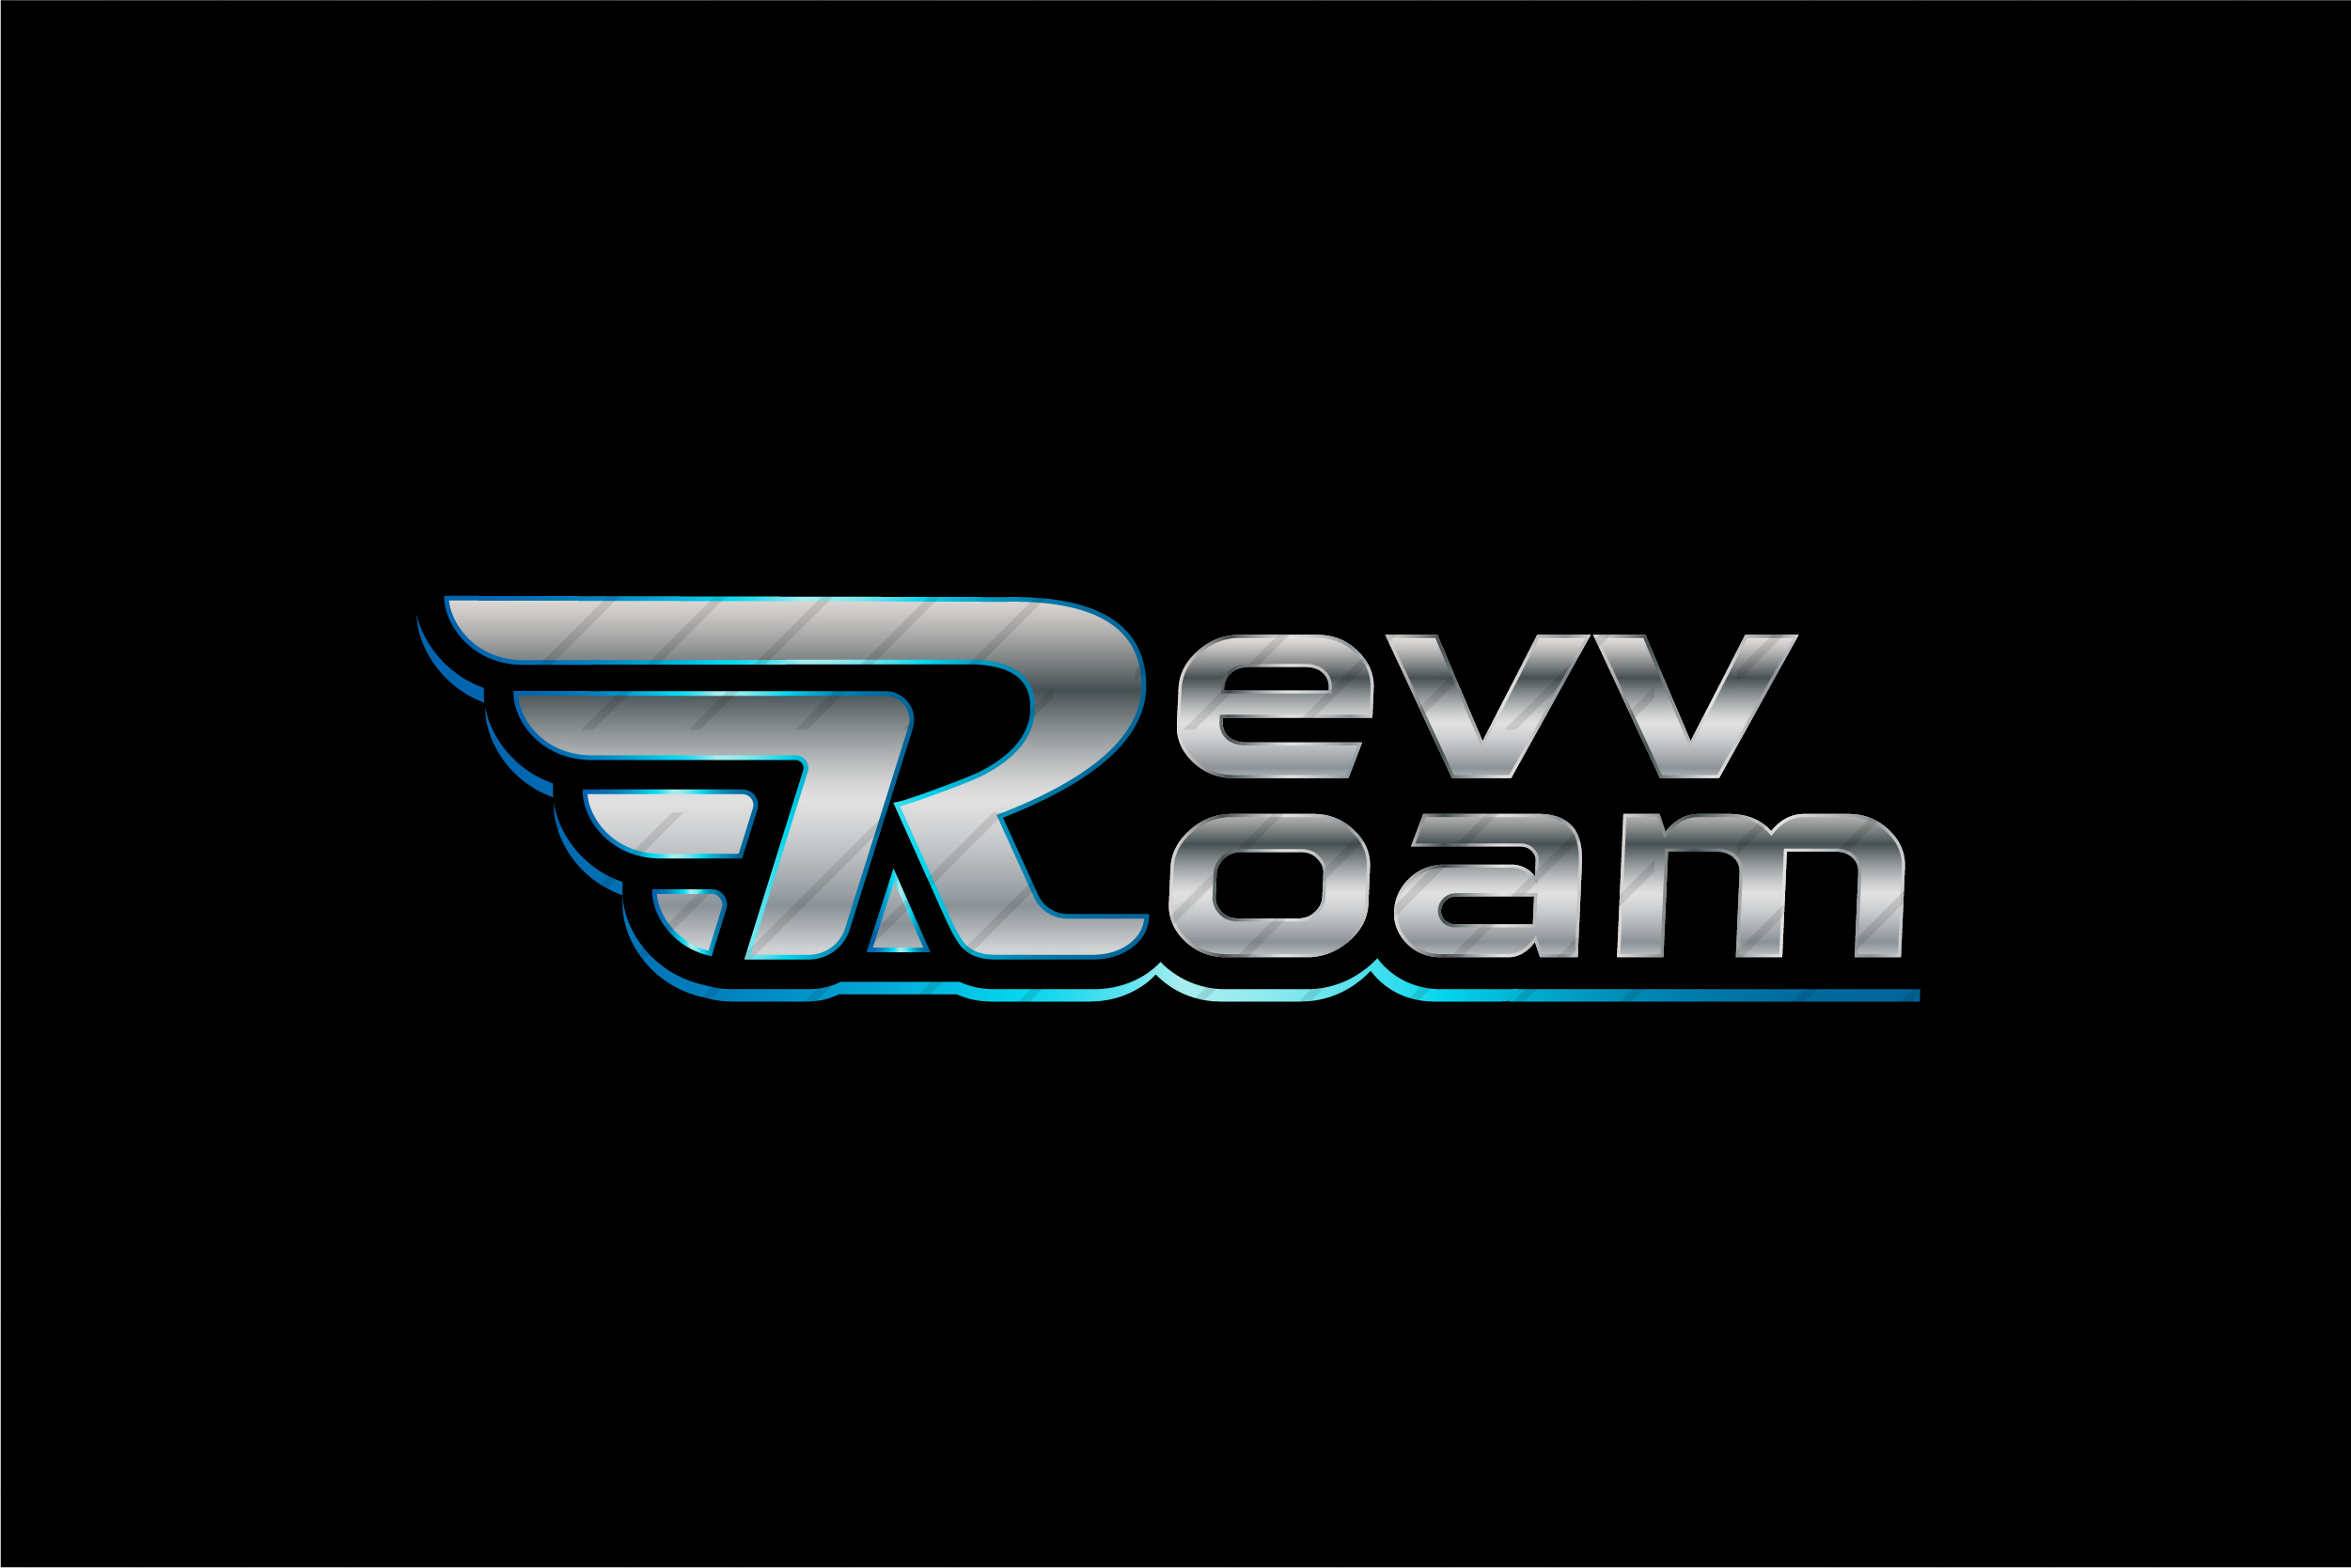 Avatar: Revv Roam